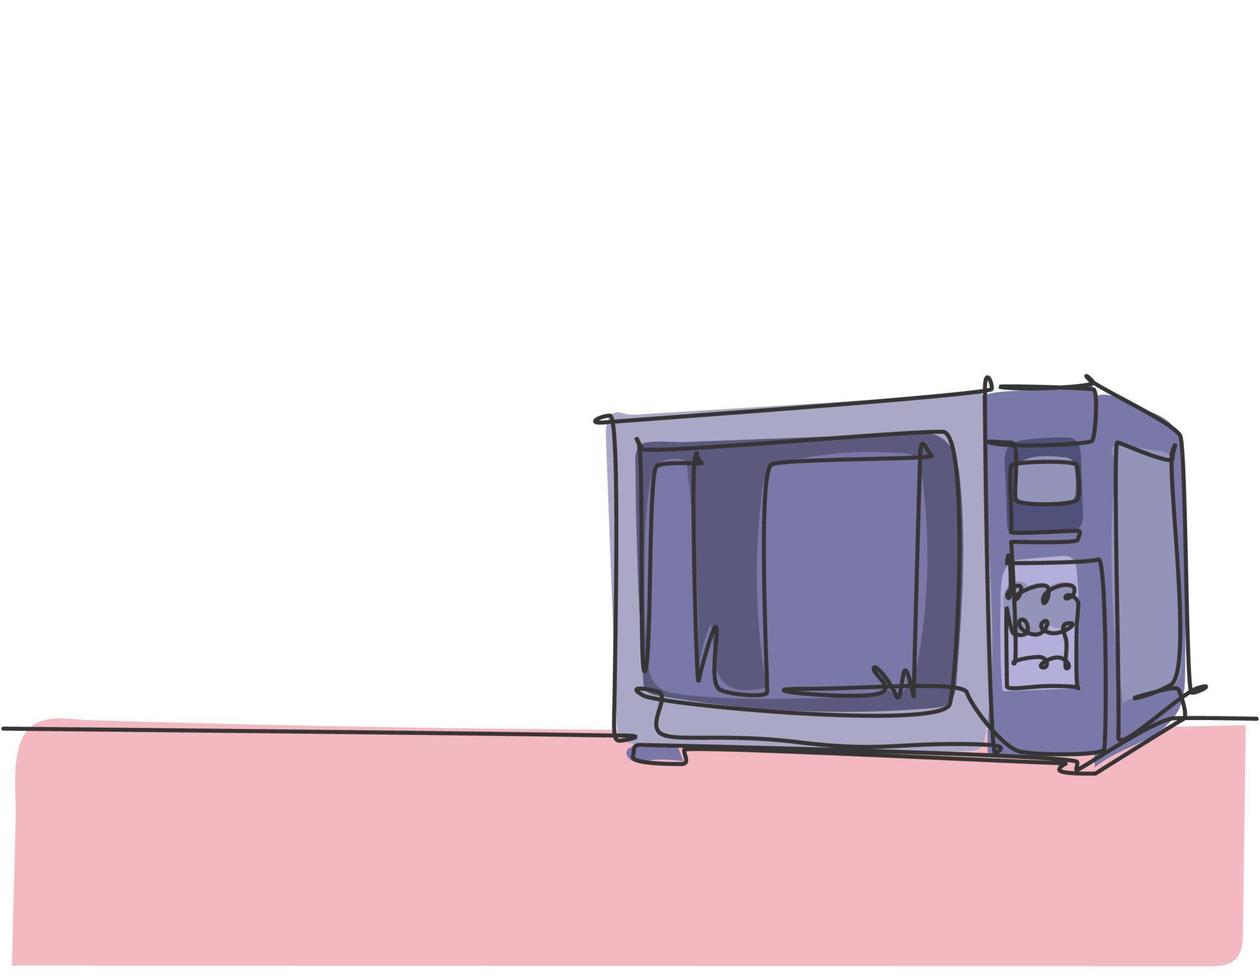 Un dibujo de una sola línea de un aparato electrodoméstico estufa horno microondas. concepto de herramientas de utensilios de cocina de electricidad. Ilustración de diseño de dibujo gráfico de línea continua dinámica vector